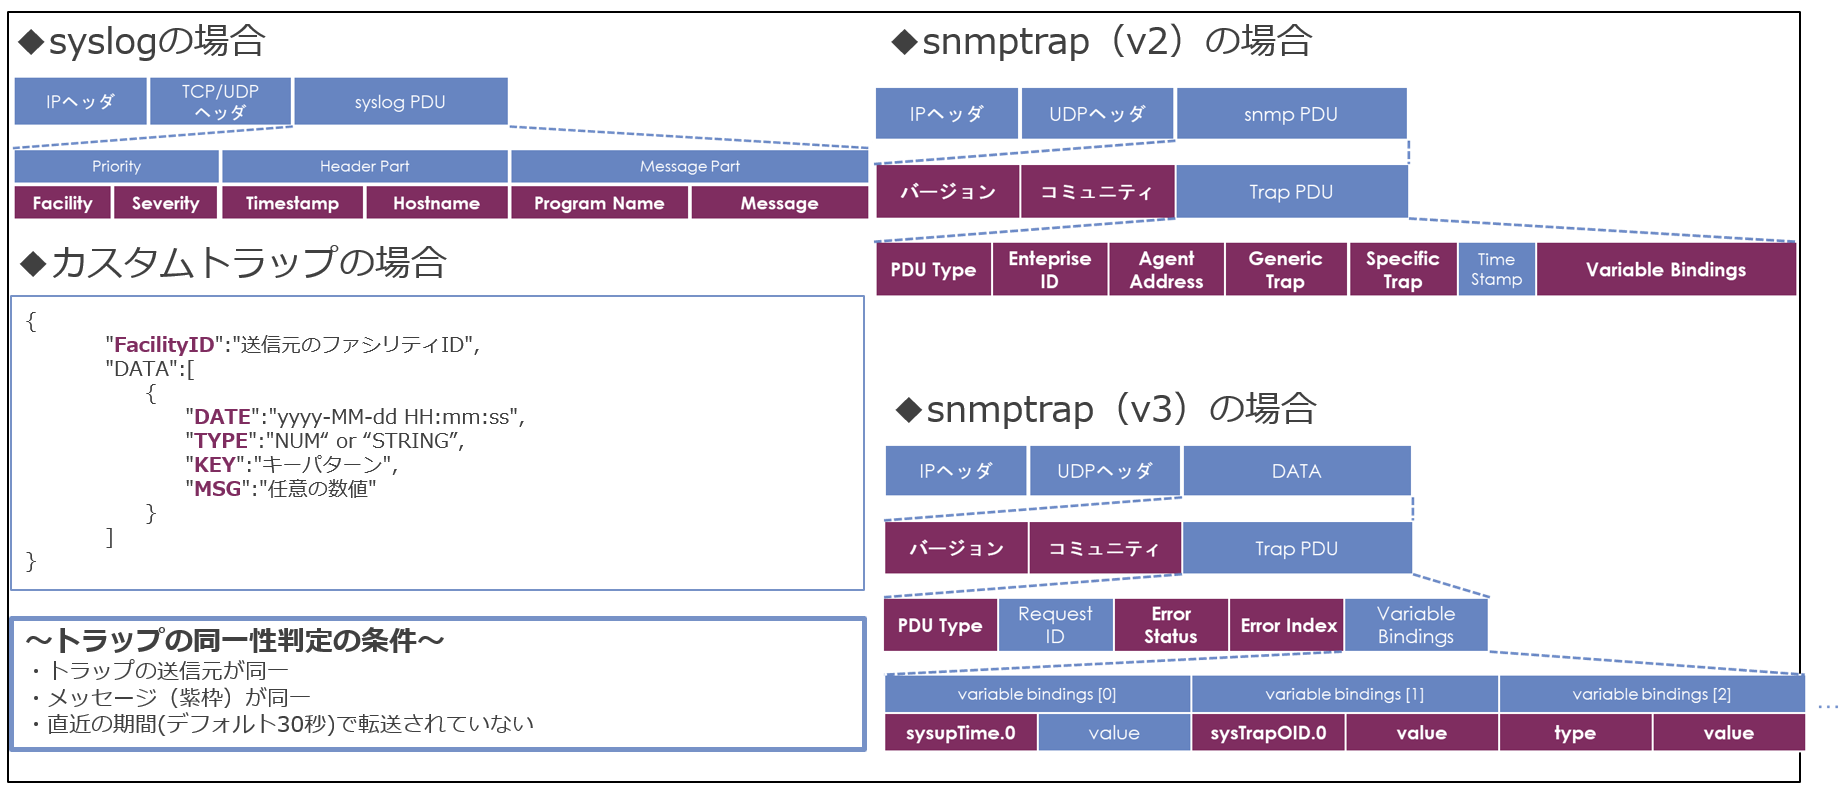 syslogやSNMPTRAPなど各トラップがメッセージの内容をベースに同一性判定を処理する様子